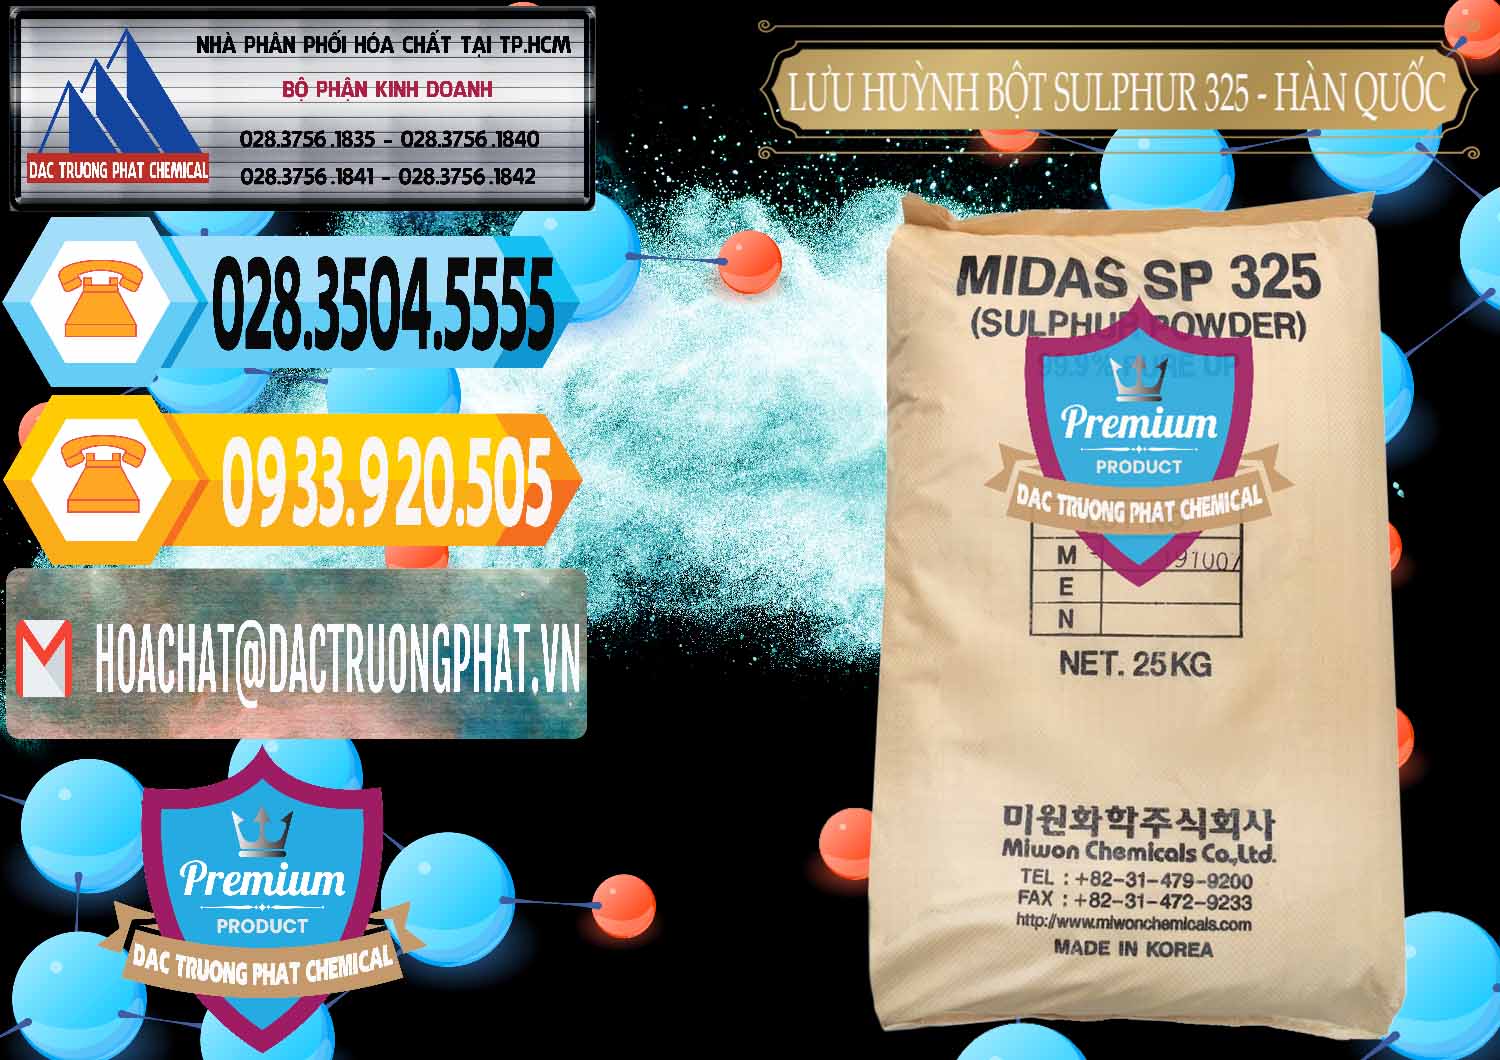 Cty chuyên phân phối ( bán ) Lưu huỳnh Bột - Sulfur Powder Midas SP 325 Hàn Quốc Korea - 0198 - Chuyên cung cấp & nhập khẩu hóa chất tại TP.HCM - hoachattayrua.net